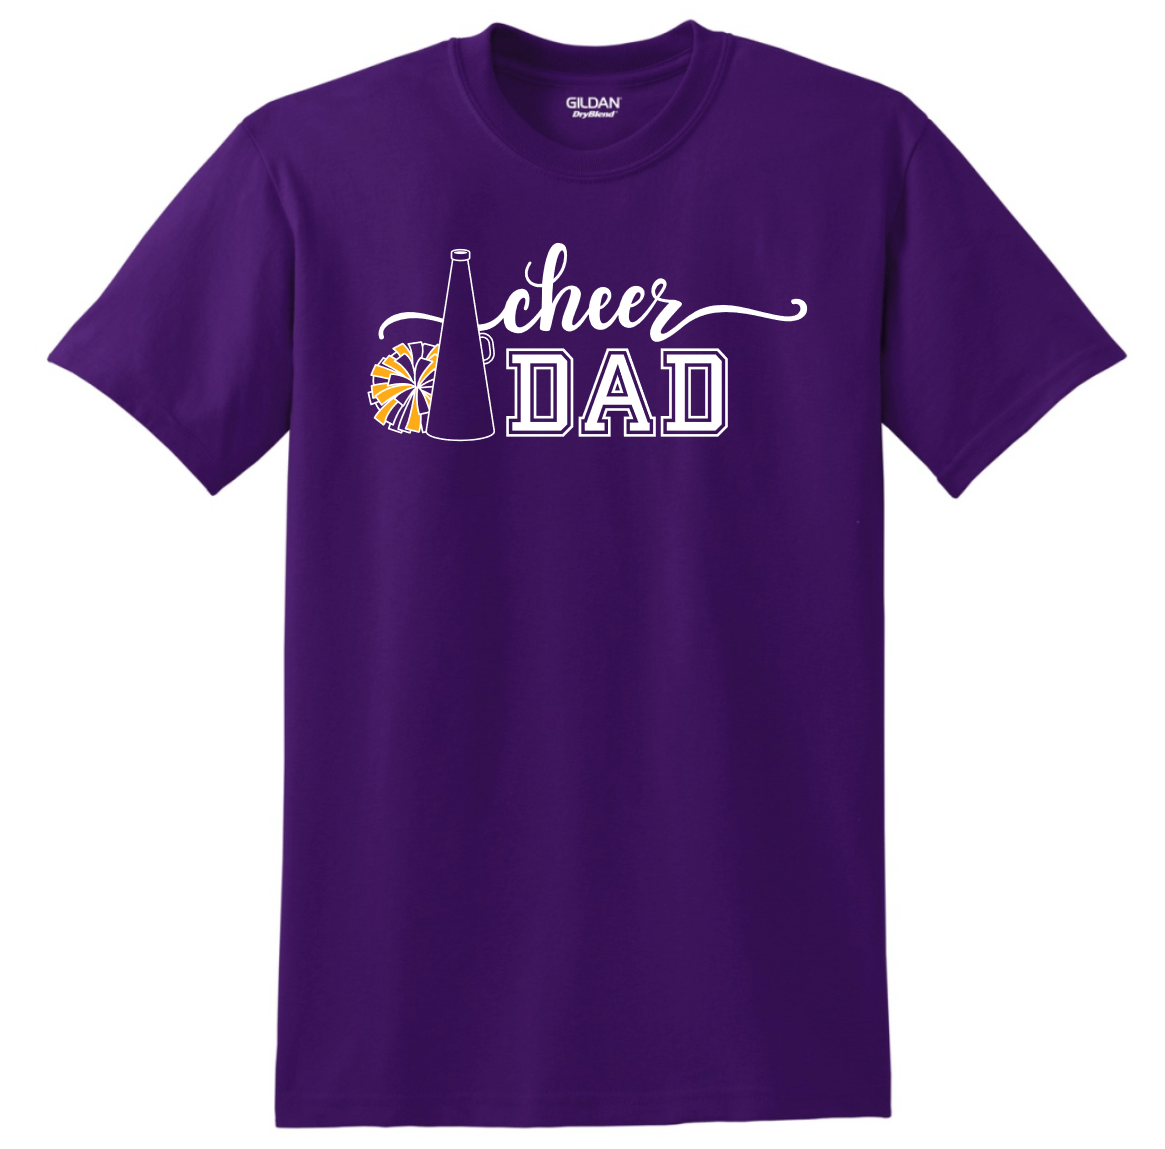 Cheer Dad Unisex Tee